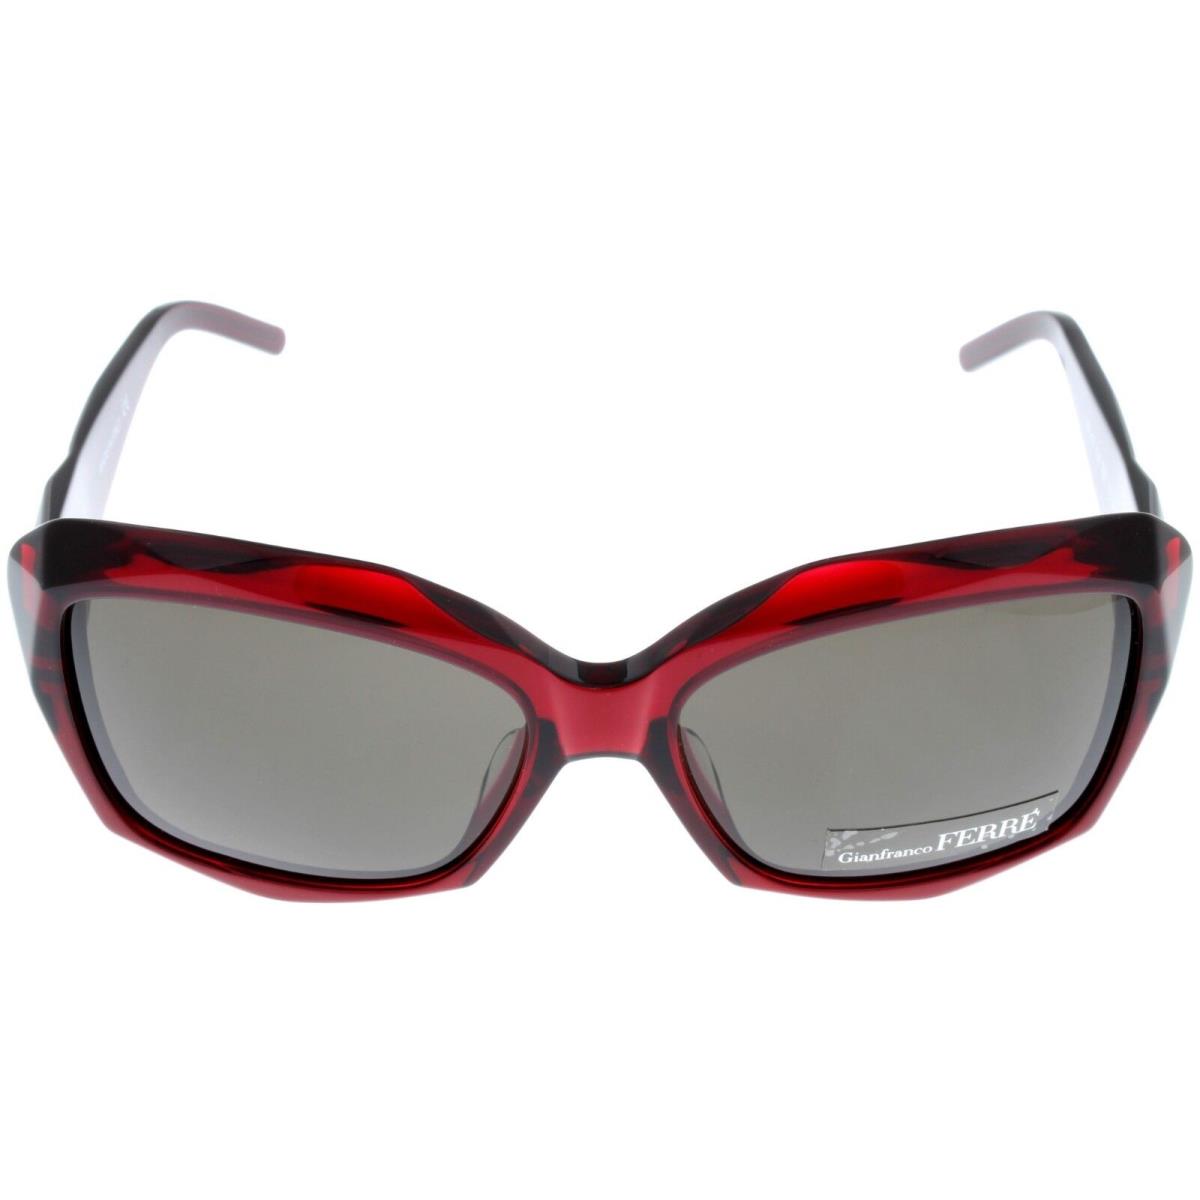 Gianfranco Ferre Sunglasses Women Red Bordeaux Rectangular GF928 03